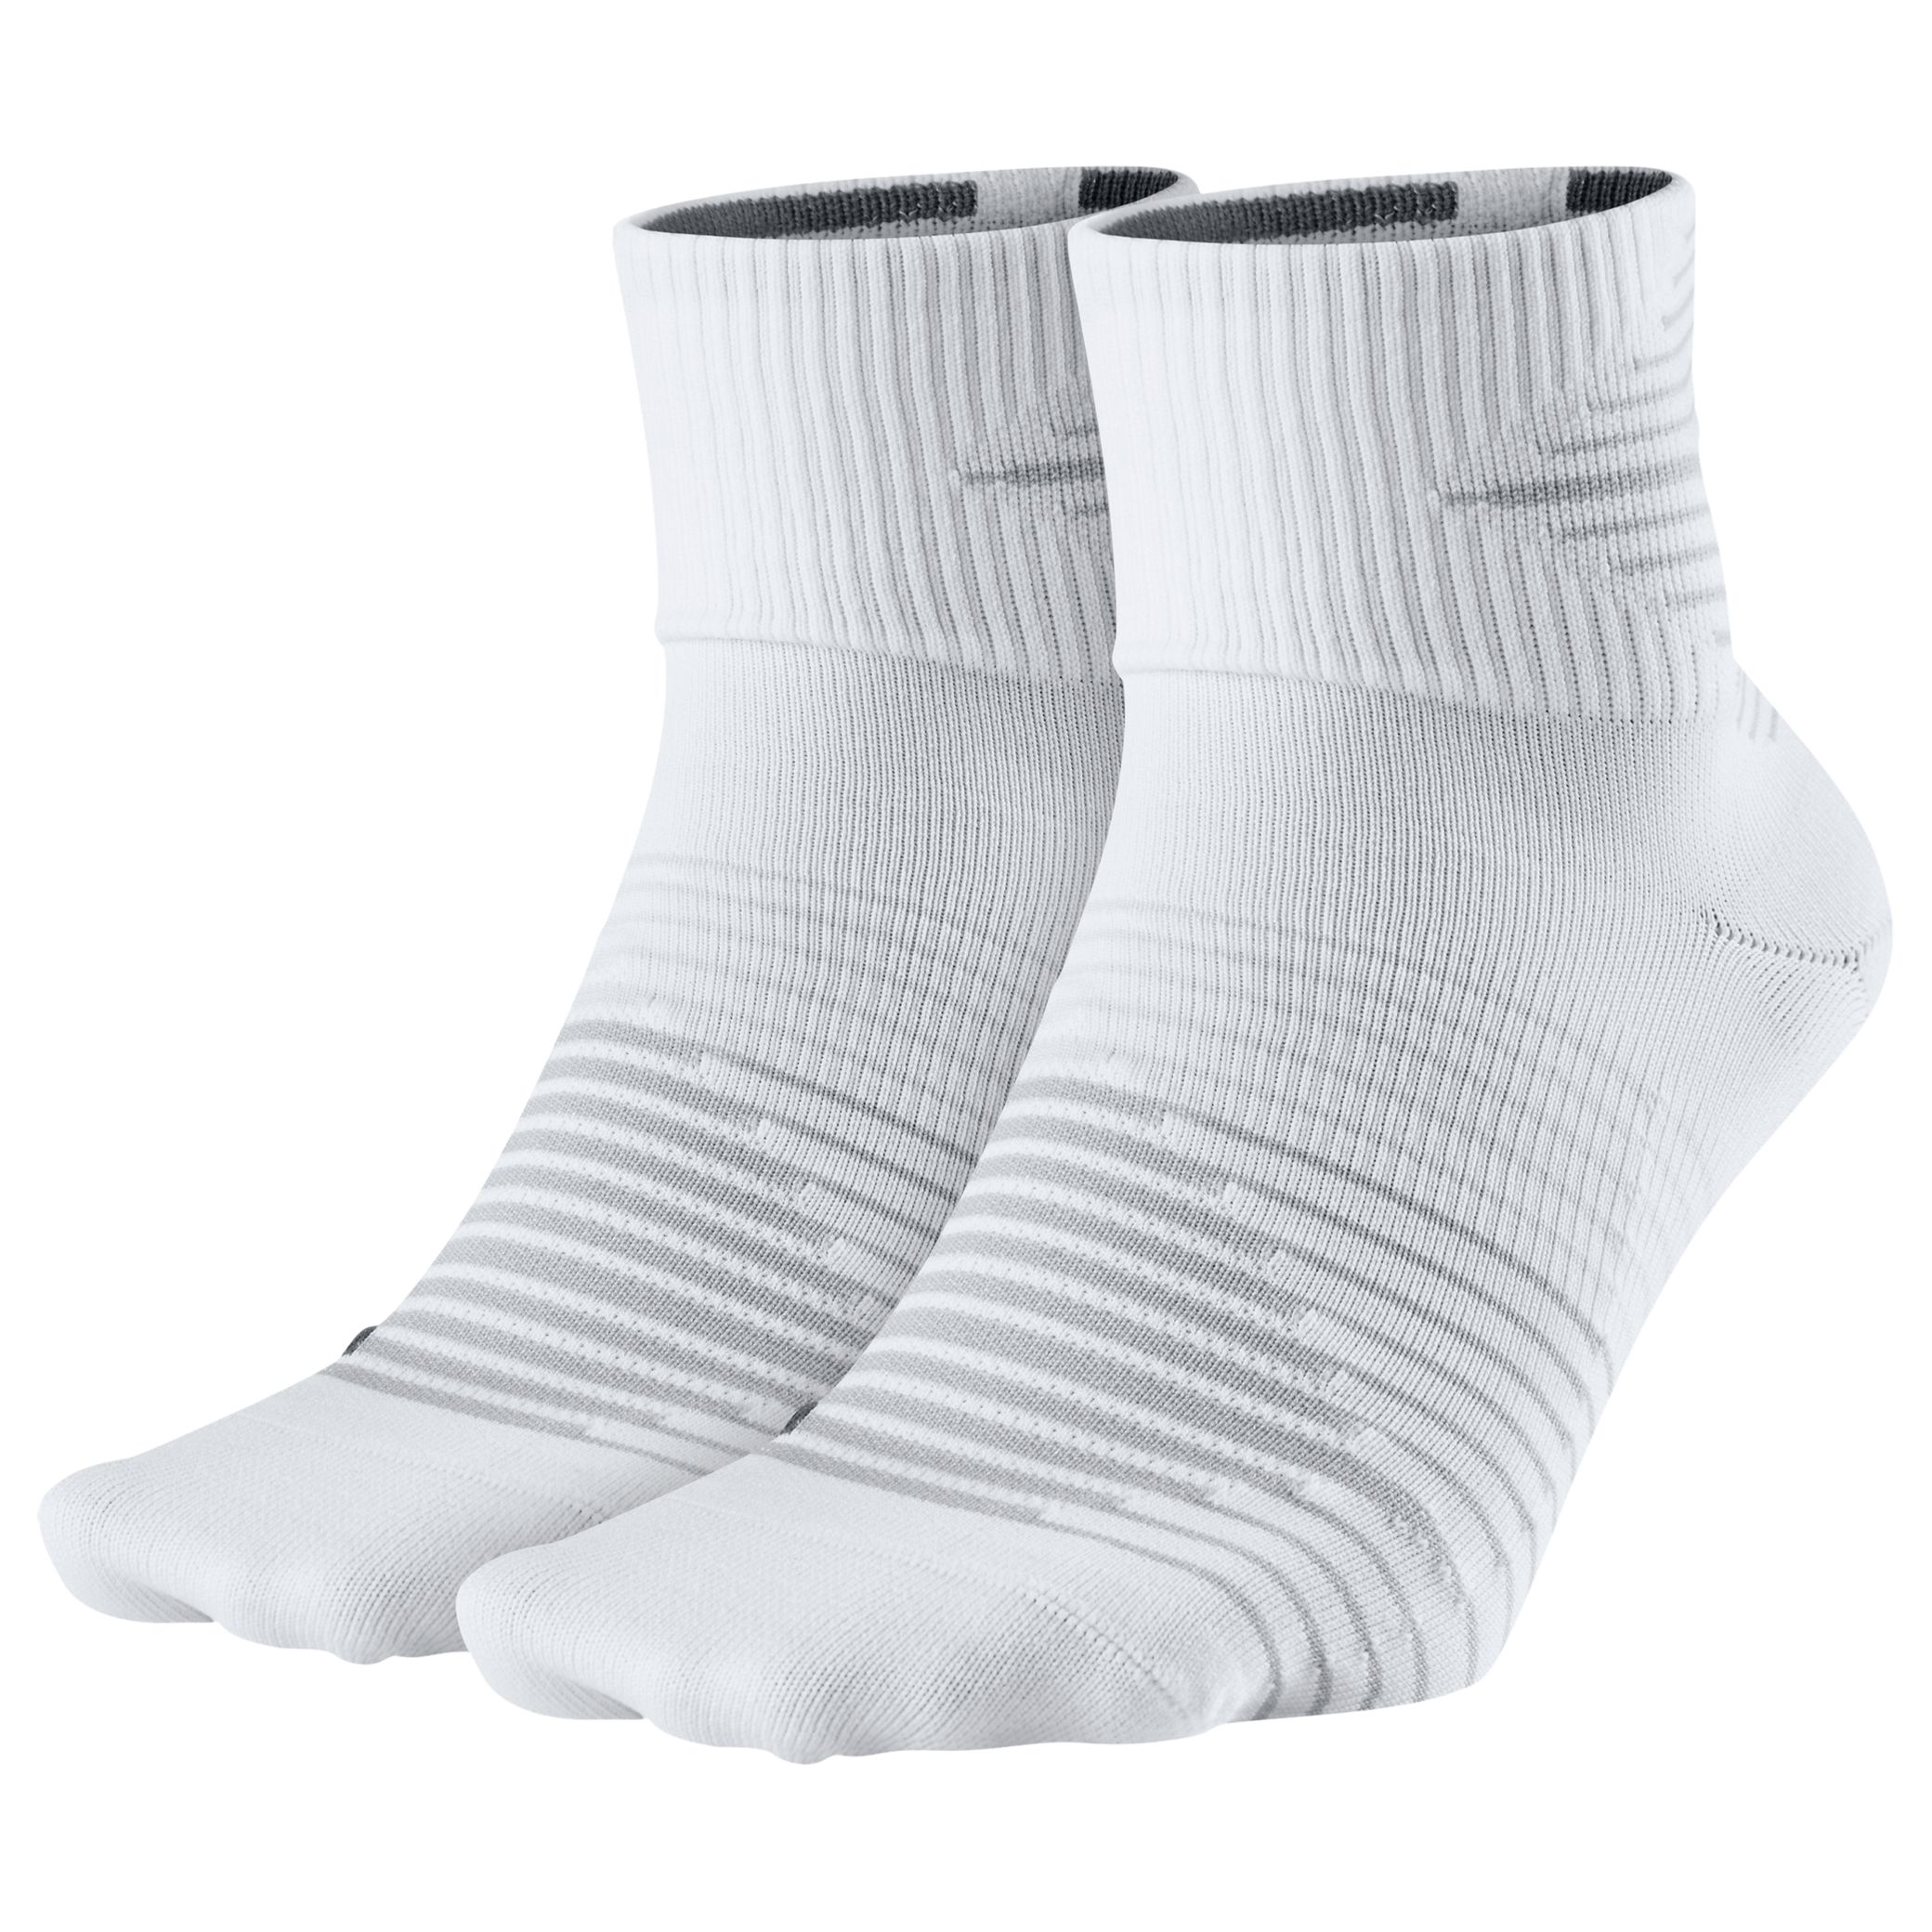 Nike Performance Lightweight Quarter Socks, Pack of 2,